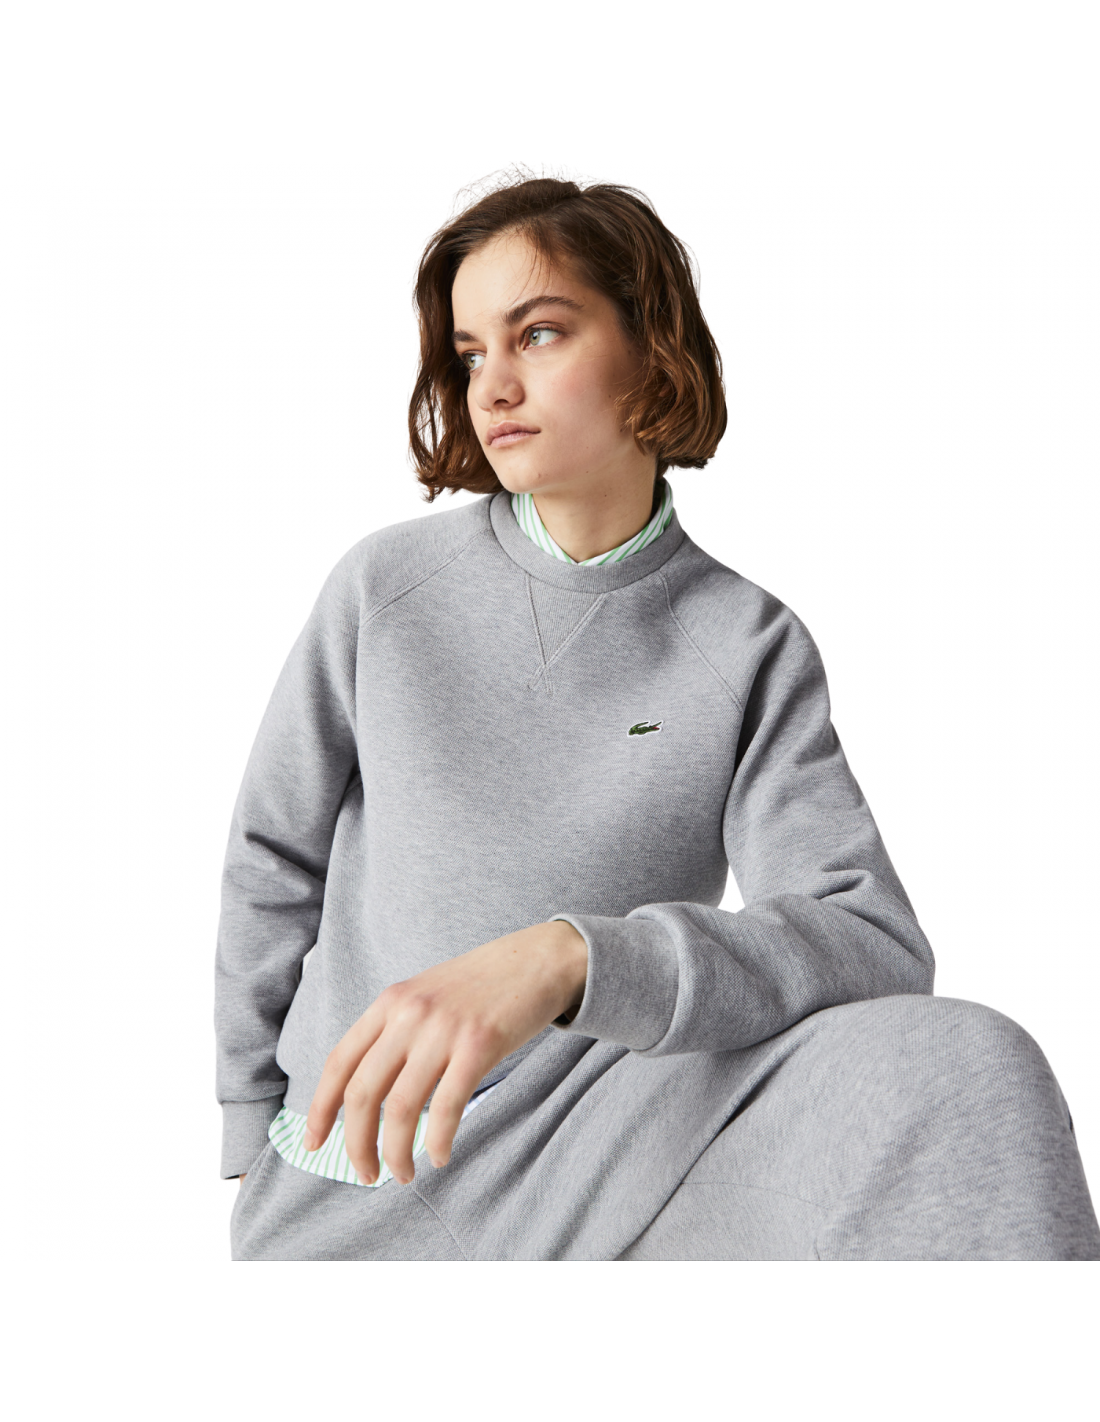 Damen Lacoste Rundhals-Sweatshirt Baumwollmischung